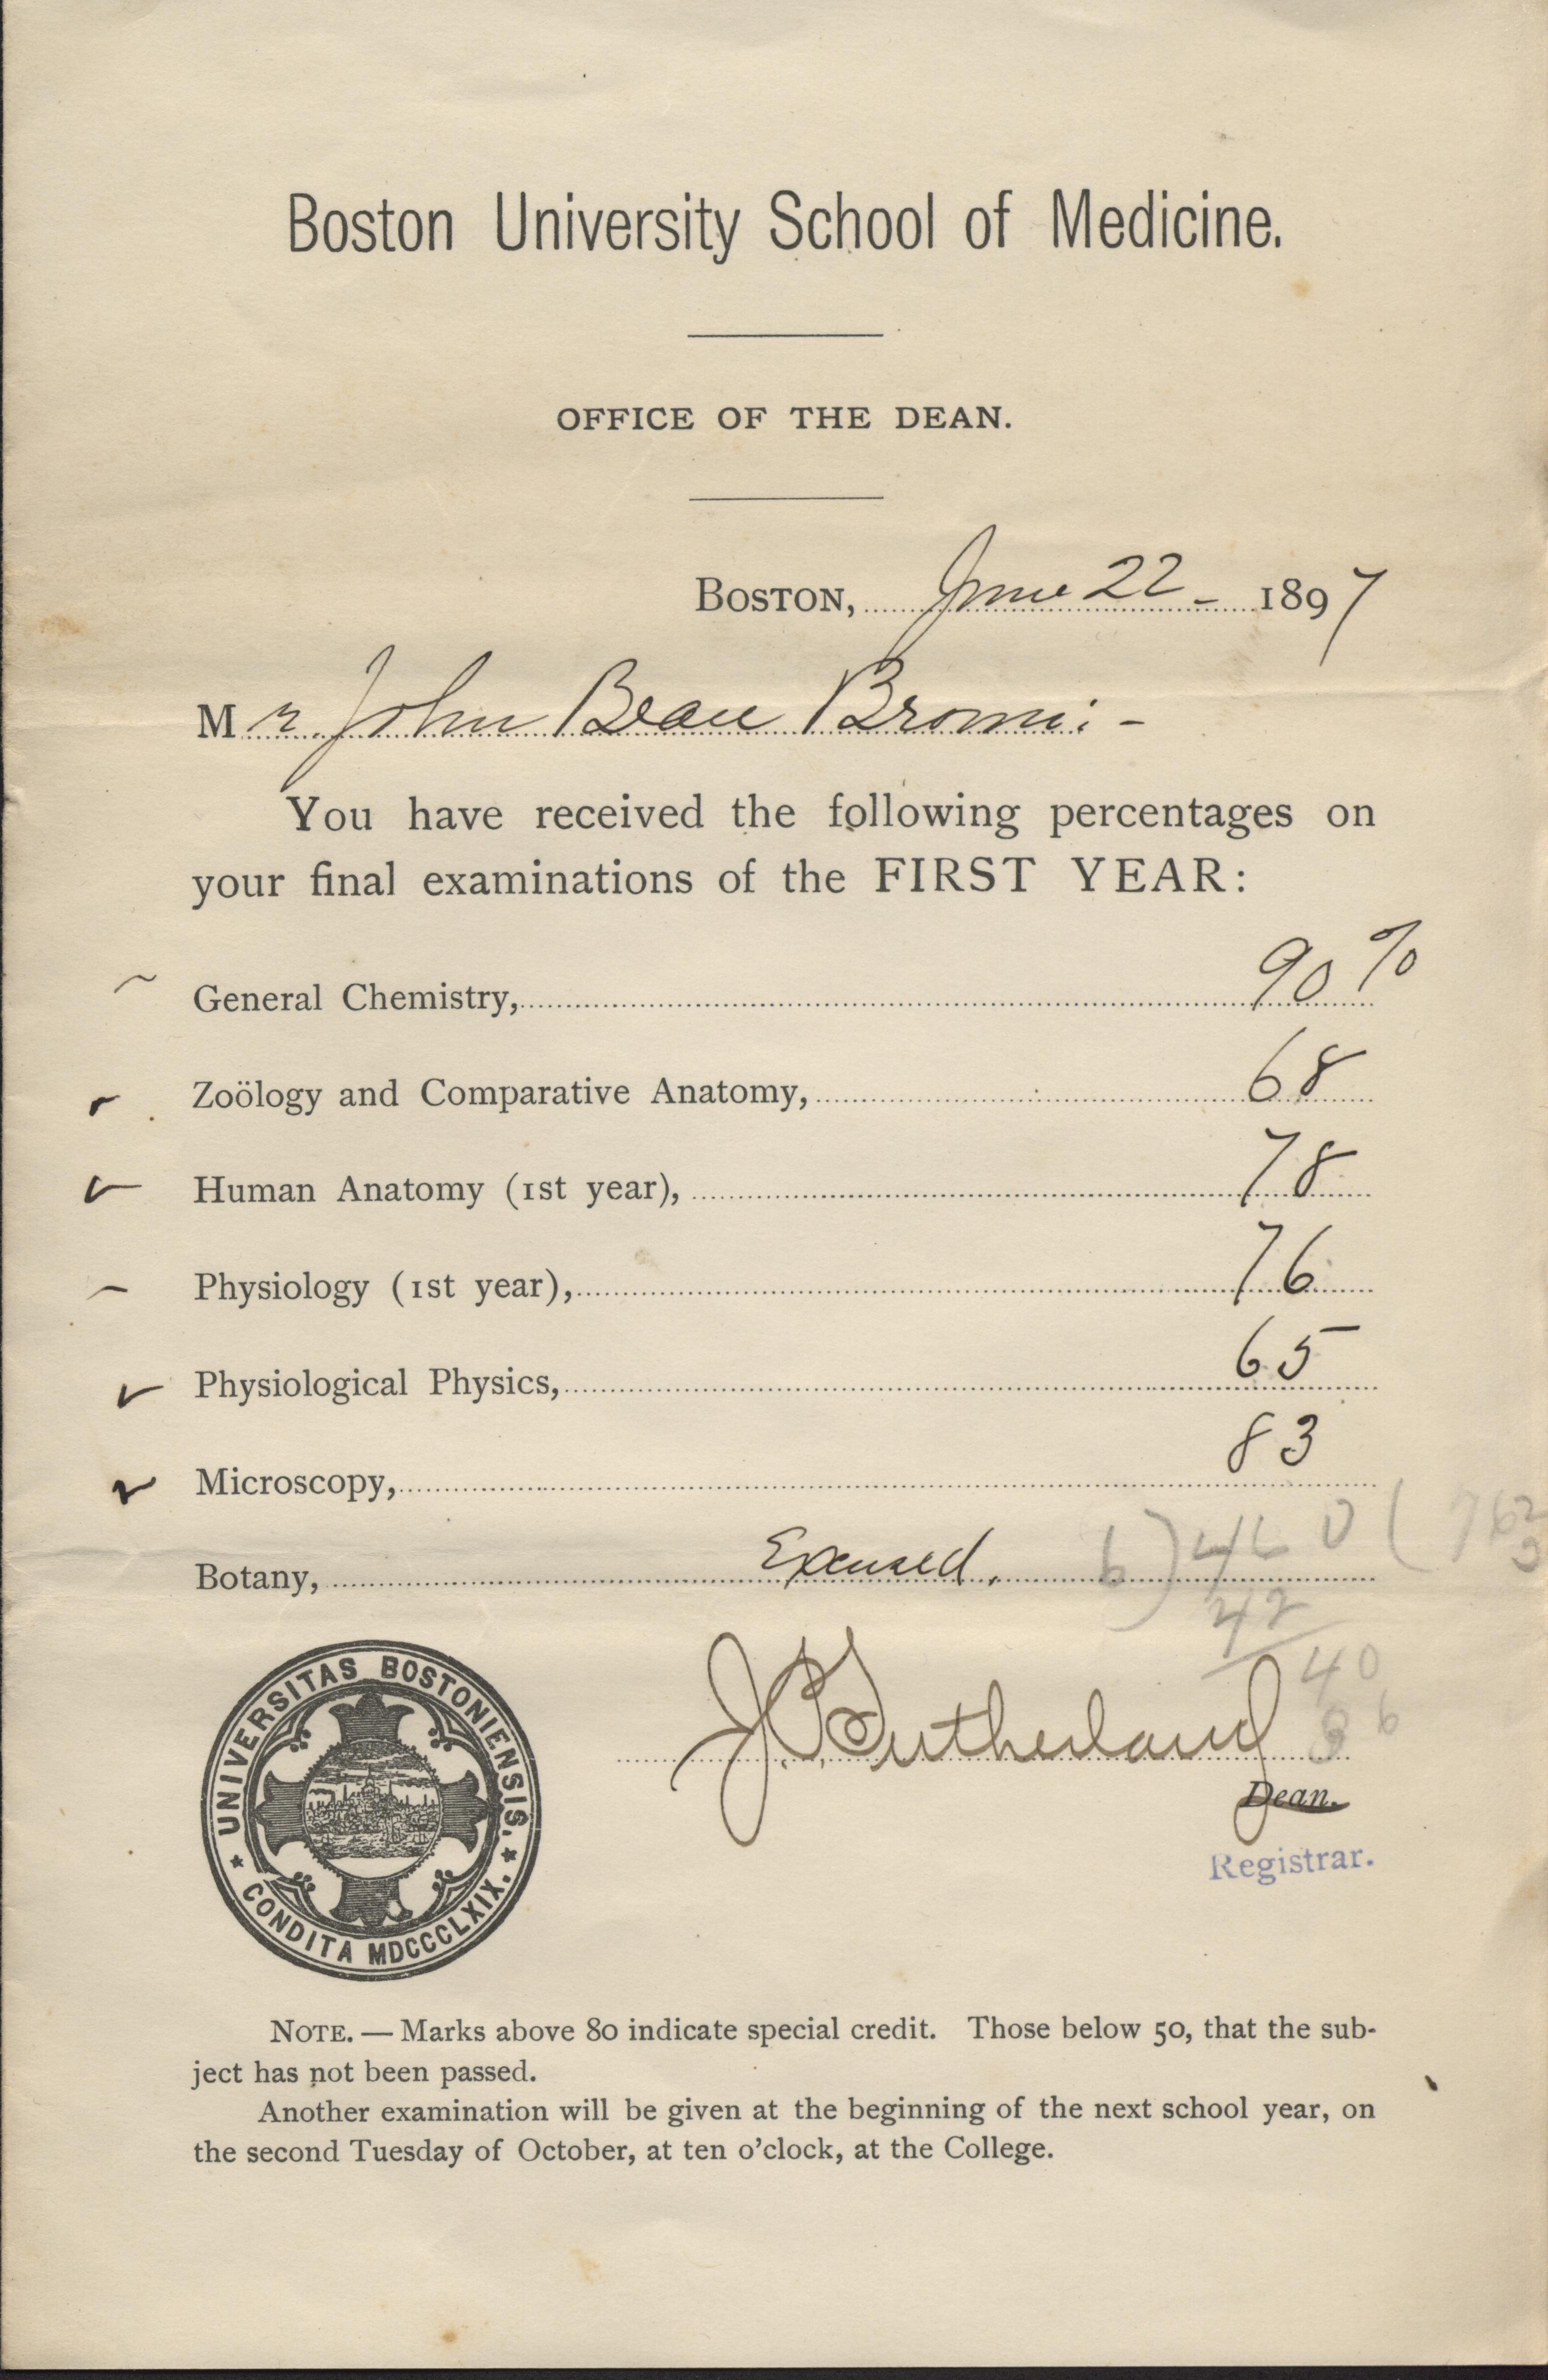 JBB 1897 Report Card